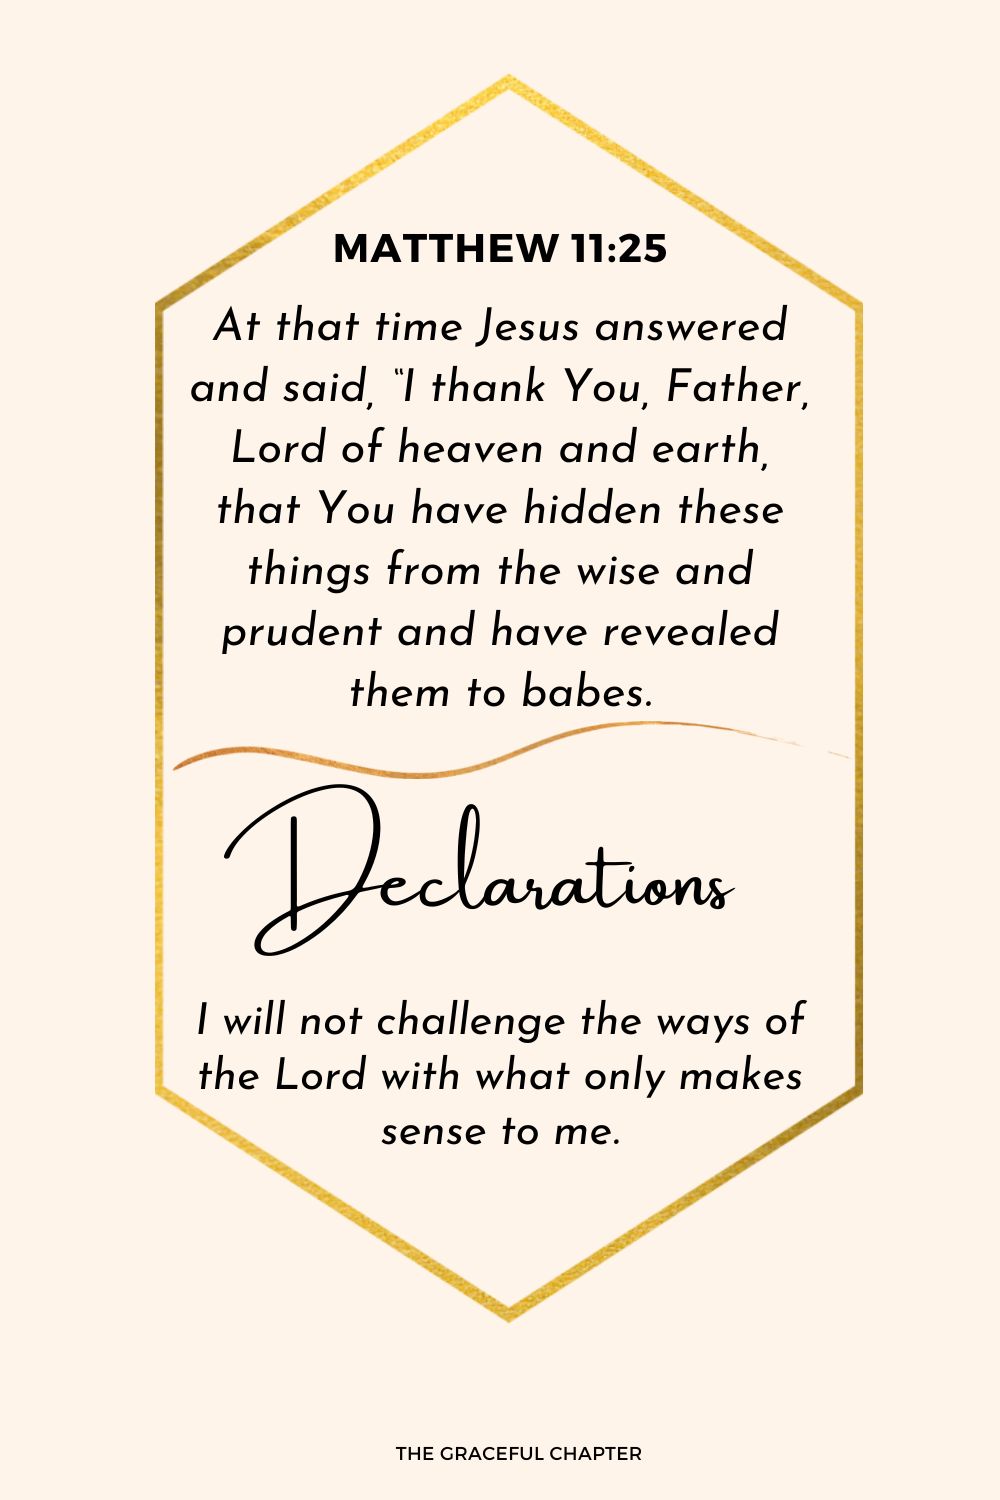 Declaration: Matthew 11:25